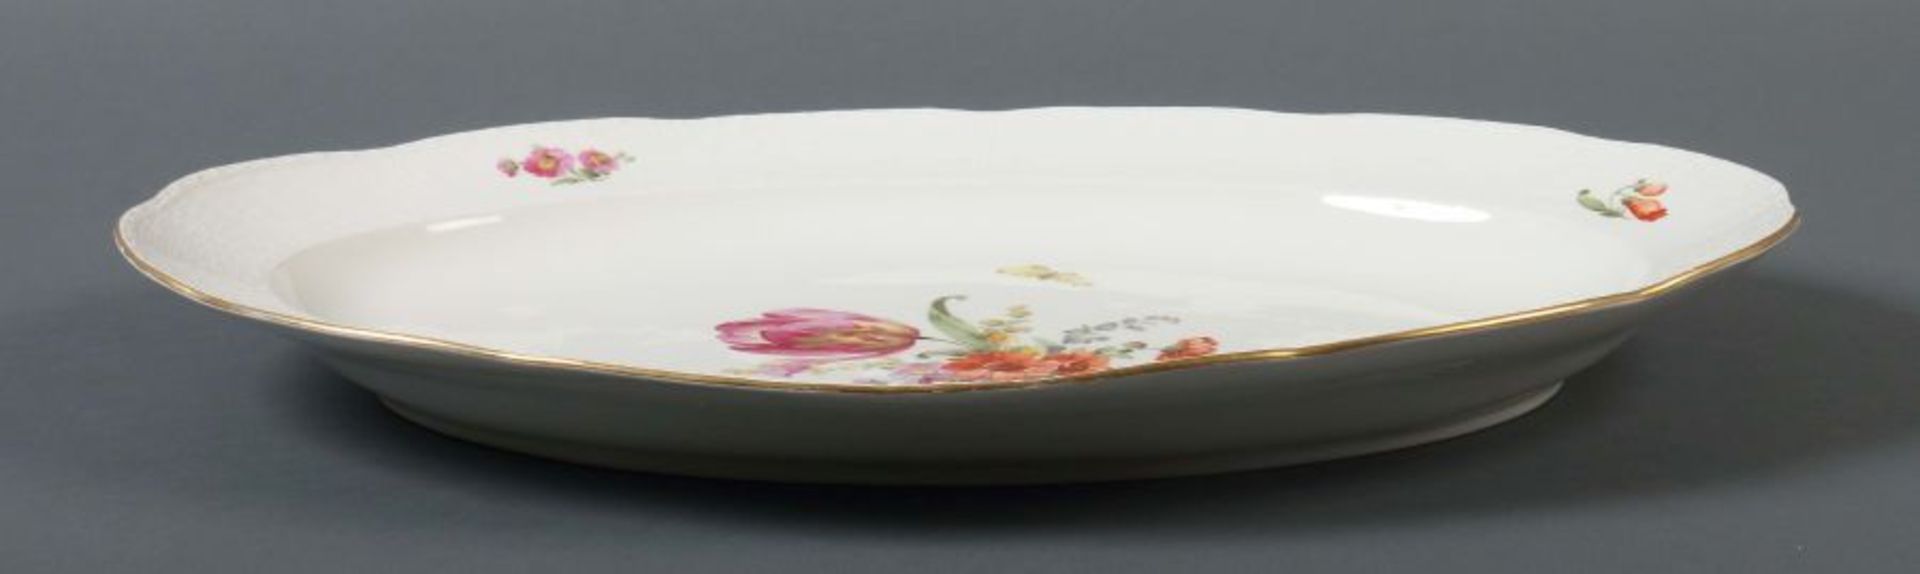 Ovale Vorlegeplatte mit Blumenmalerei - Bild 2 aus 3